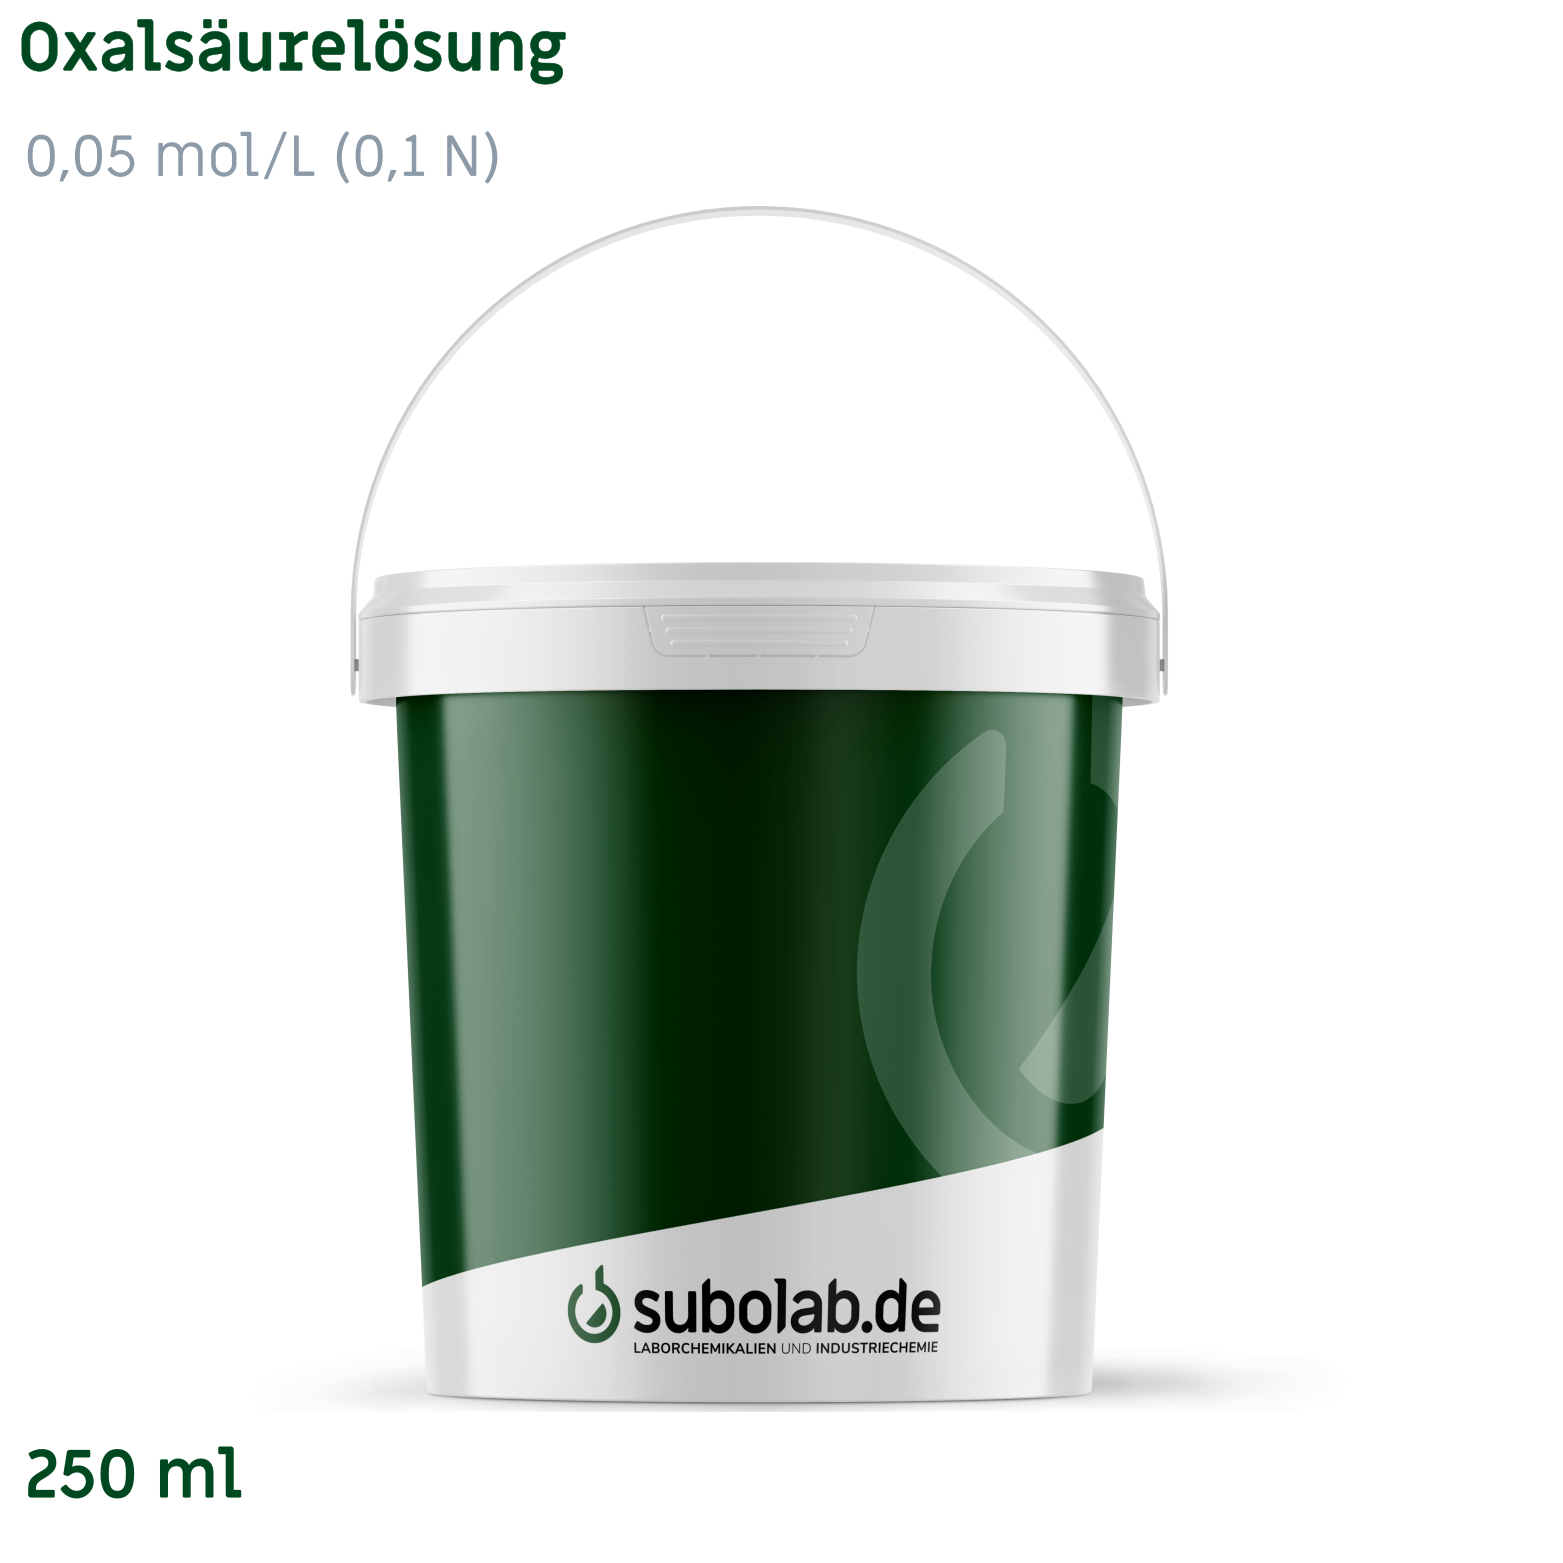 Bild von Oxalsäurelösung 0,05 mol/L (0,1 N) (250 ml)